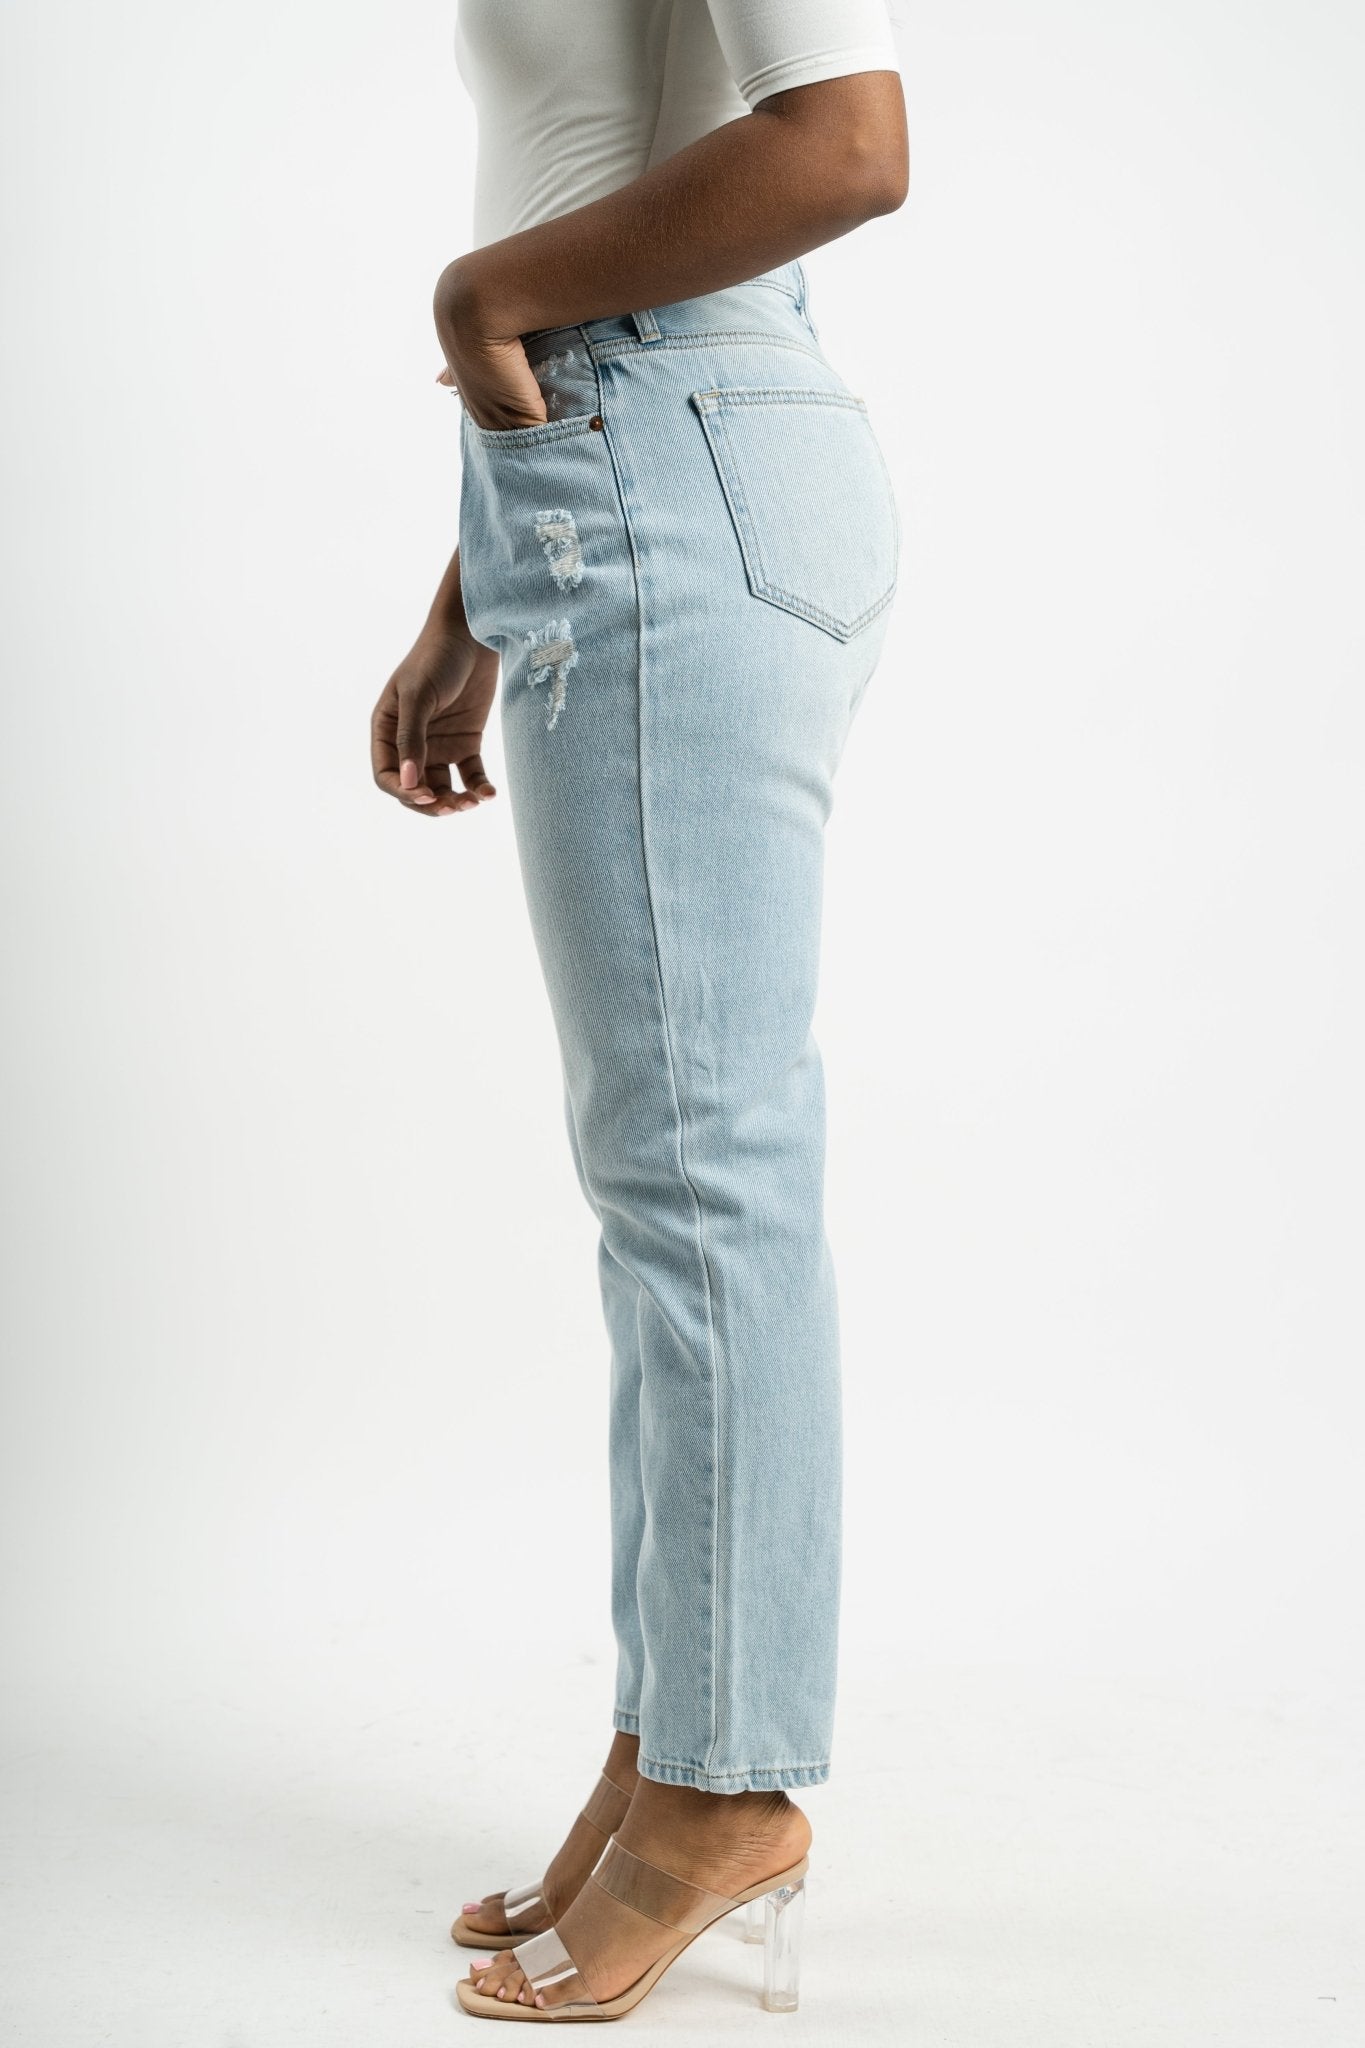 Cello high rise slim straight jeans light denim | Lush Fashion Lounge: boutique women's jeans, fashion jeans for women, affordable fashion jeans, cute boutique jeans